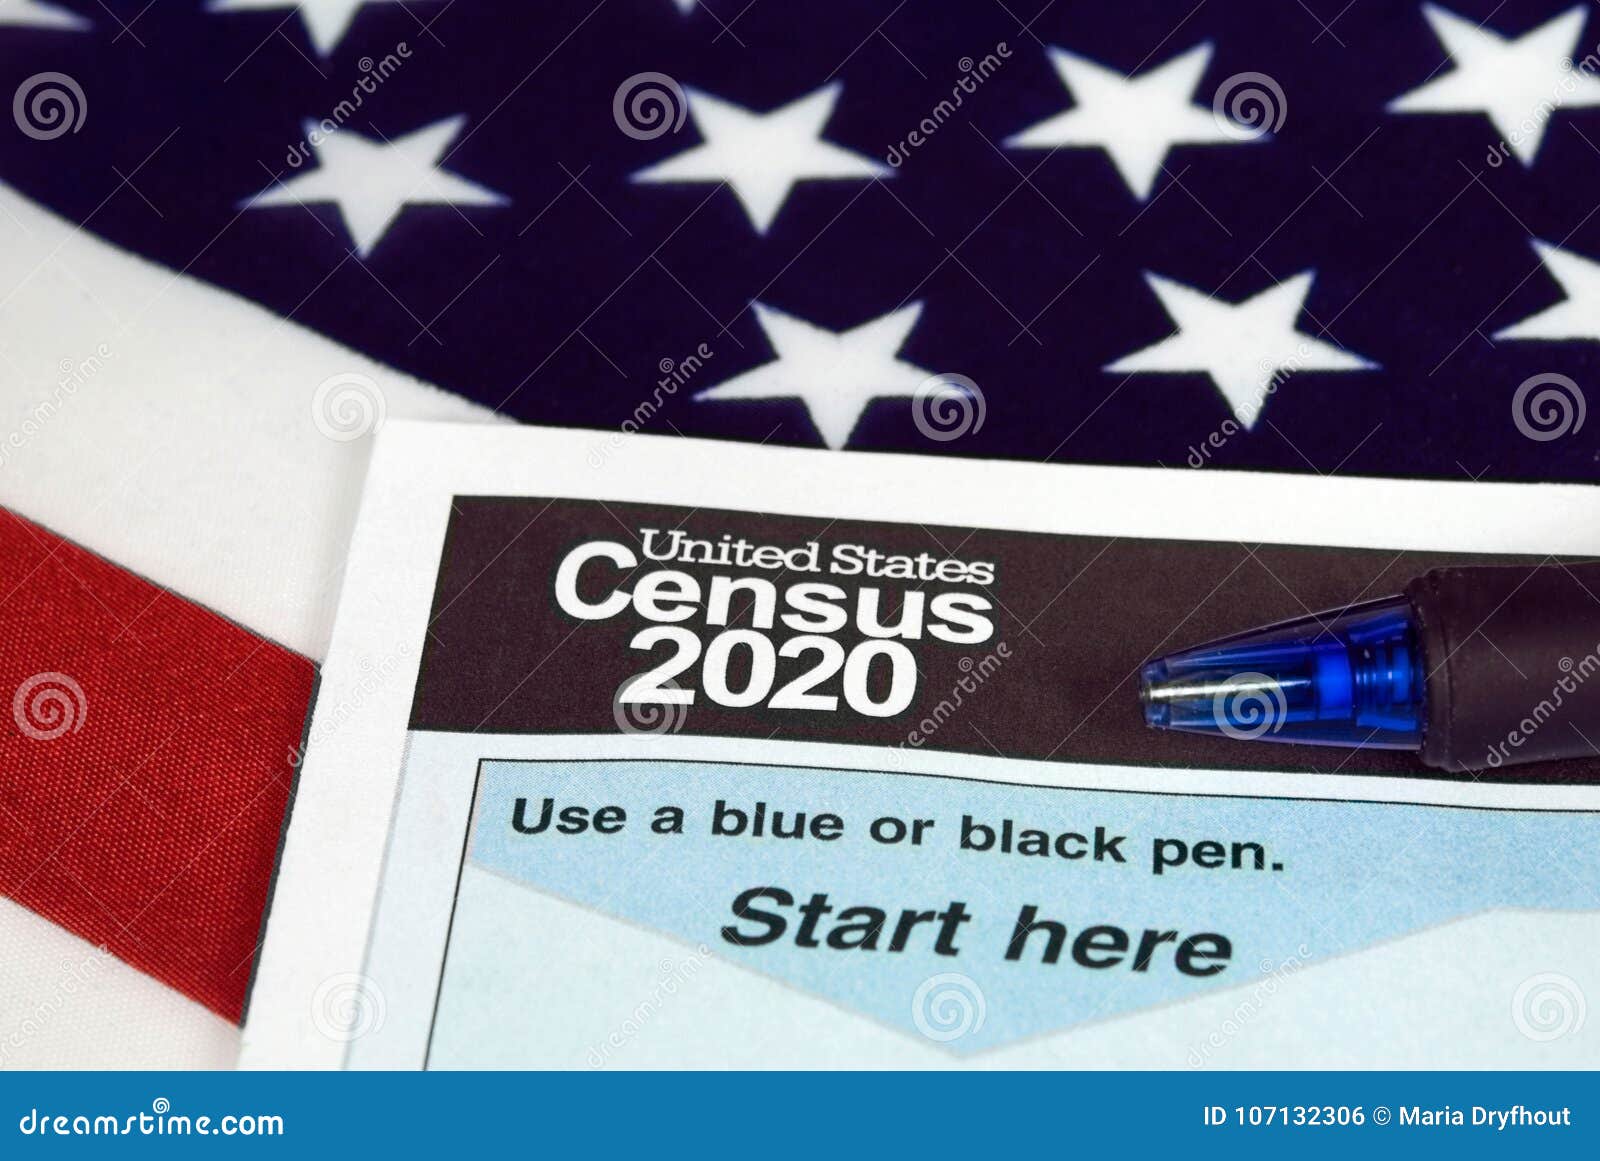 united states 2020 census form